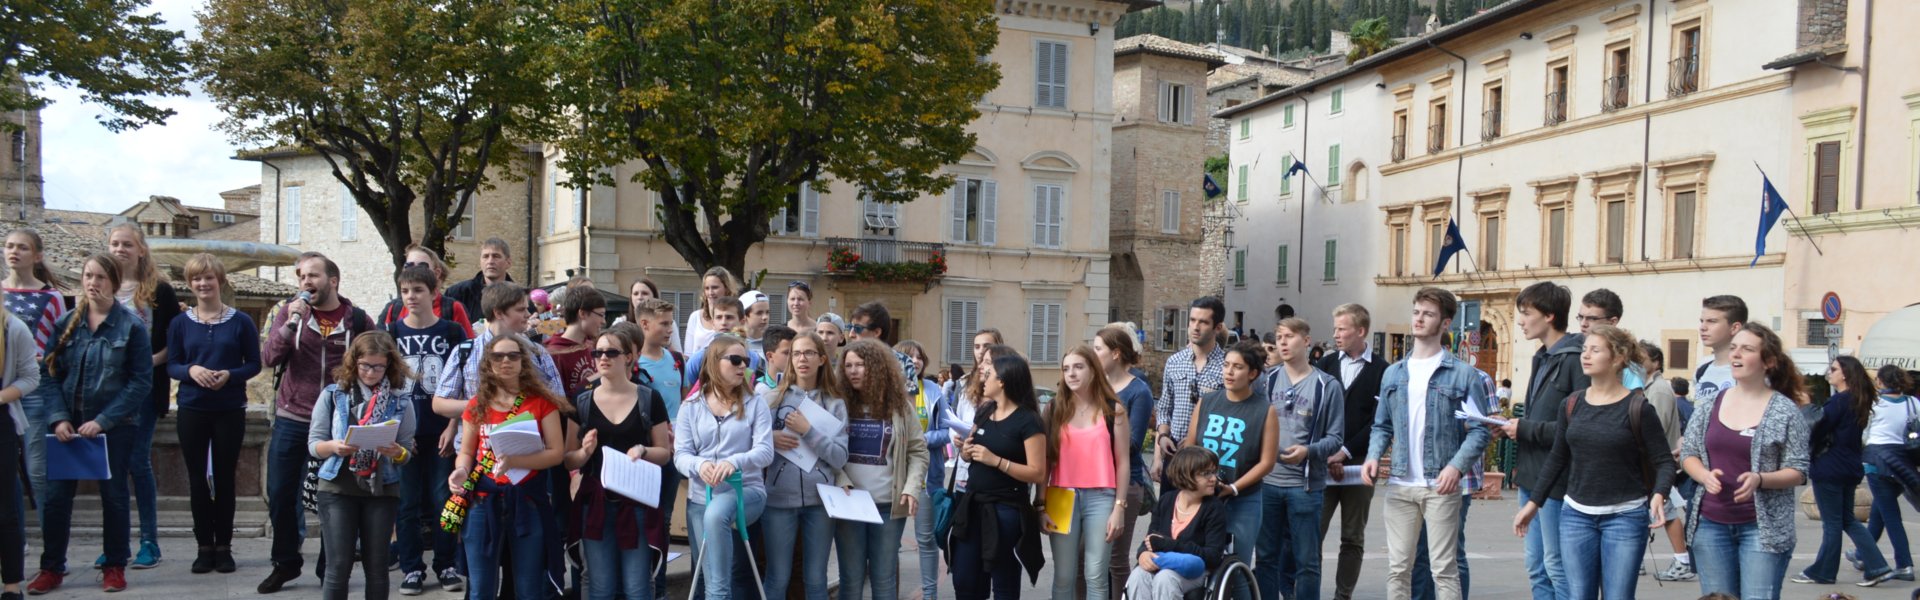 2015 JugendMusikWallfahrt_Assisi